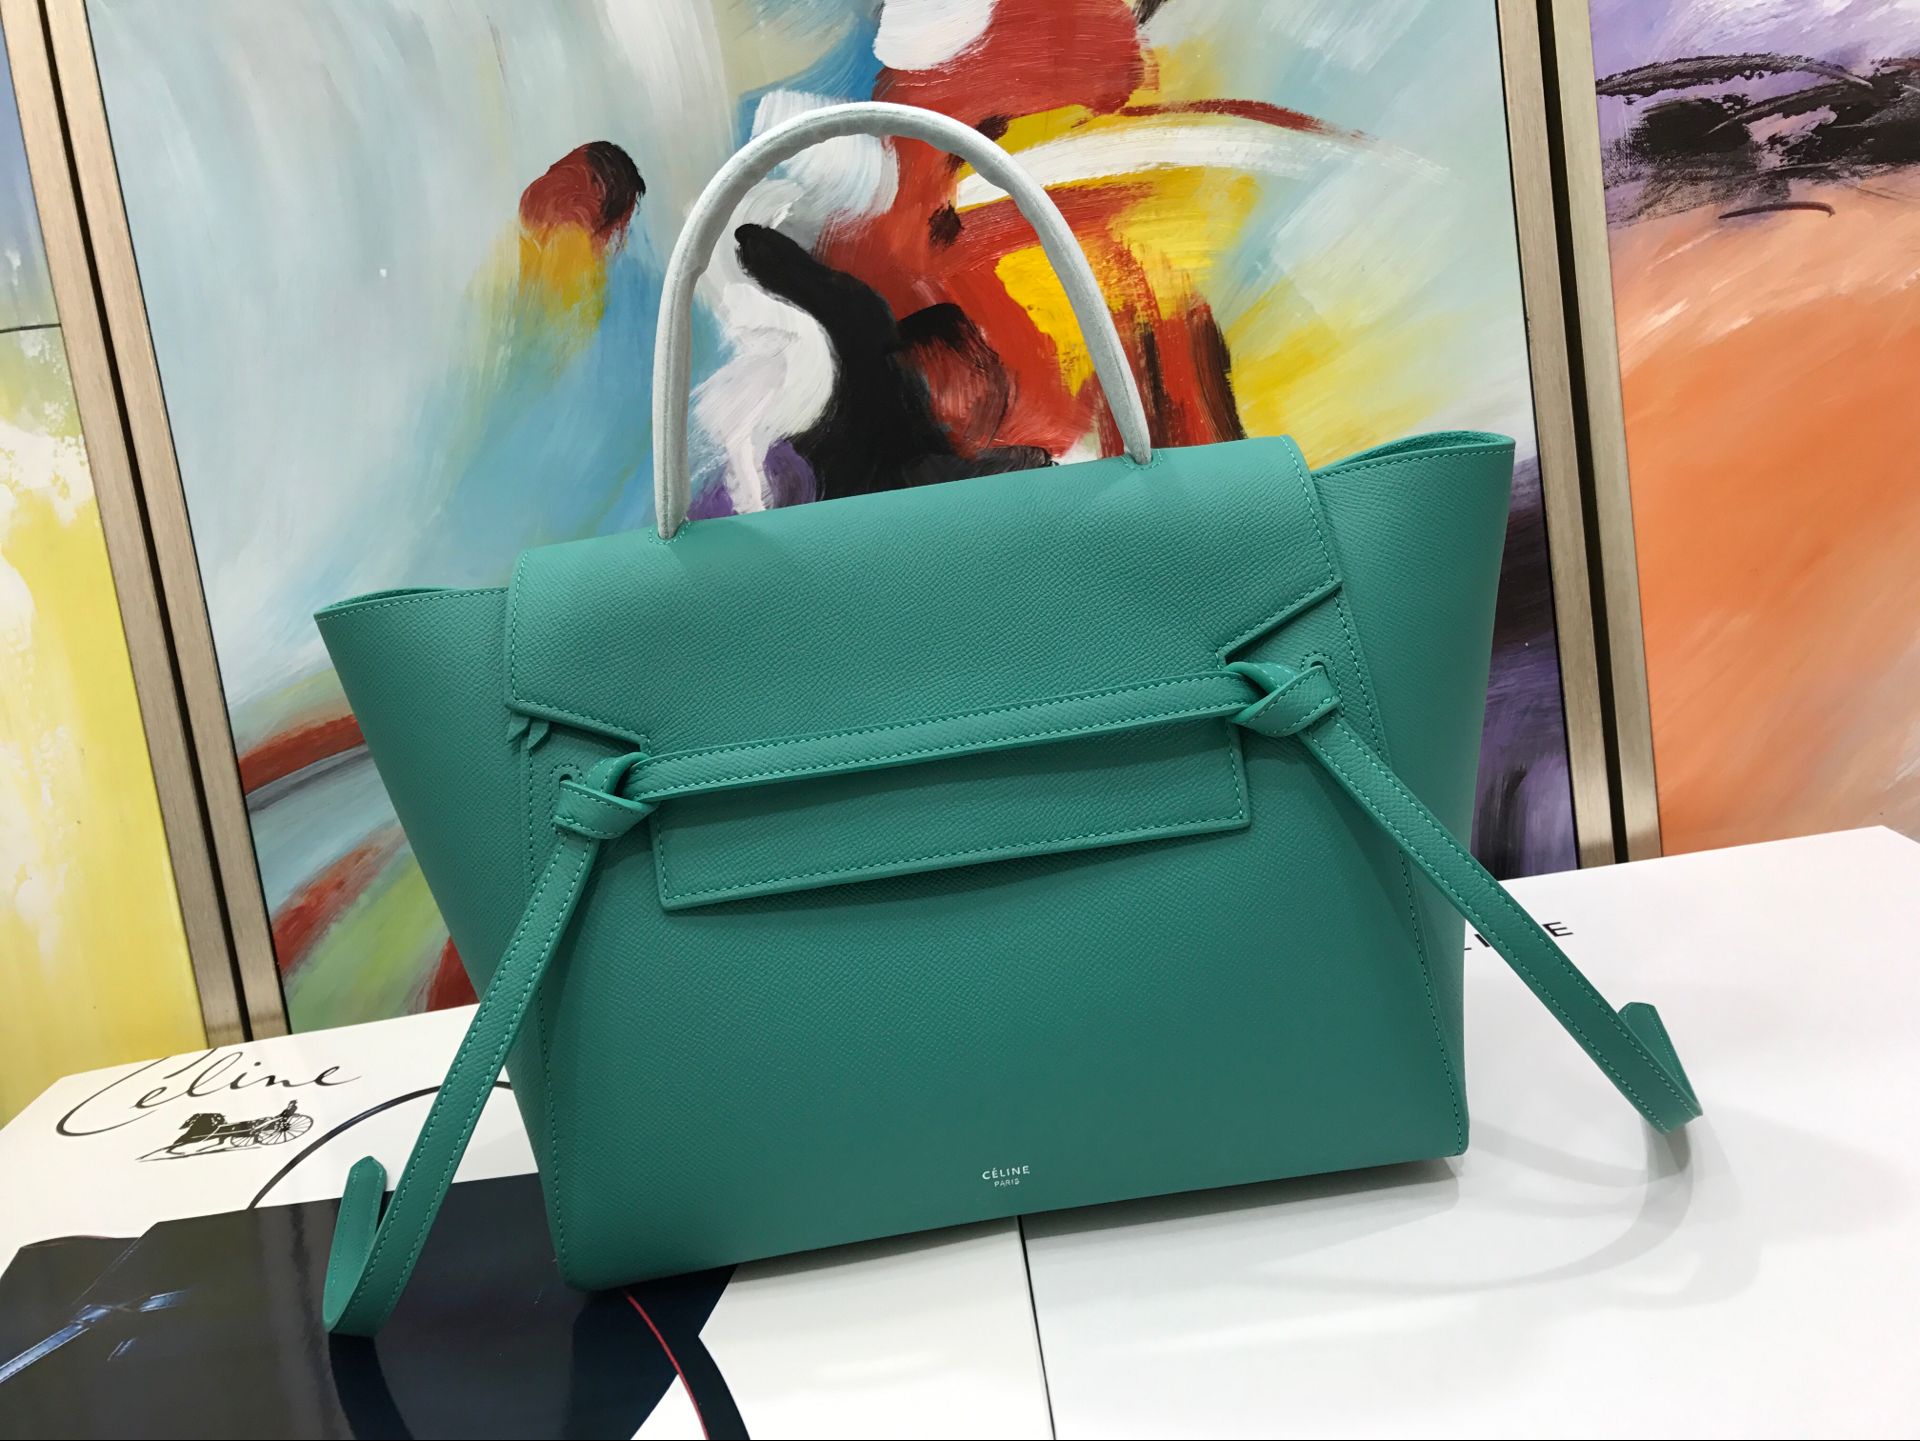 Celine Belt Bag Original Leather C98312 Green